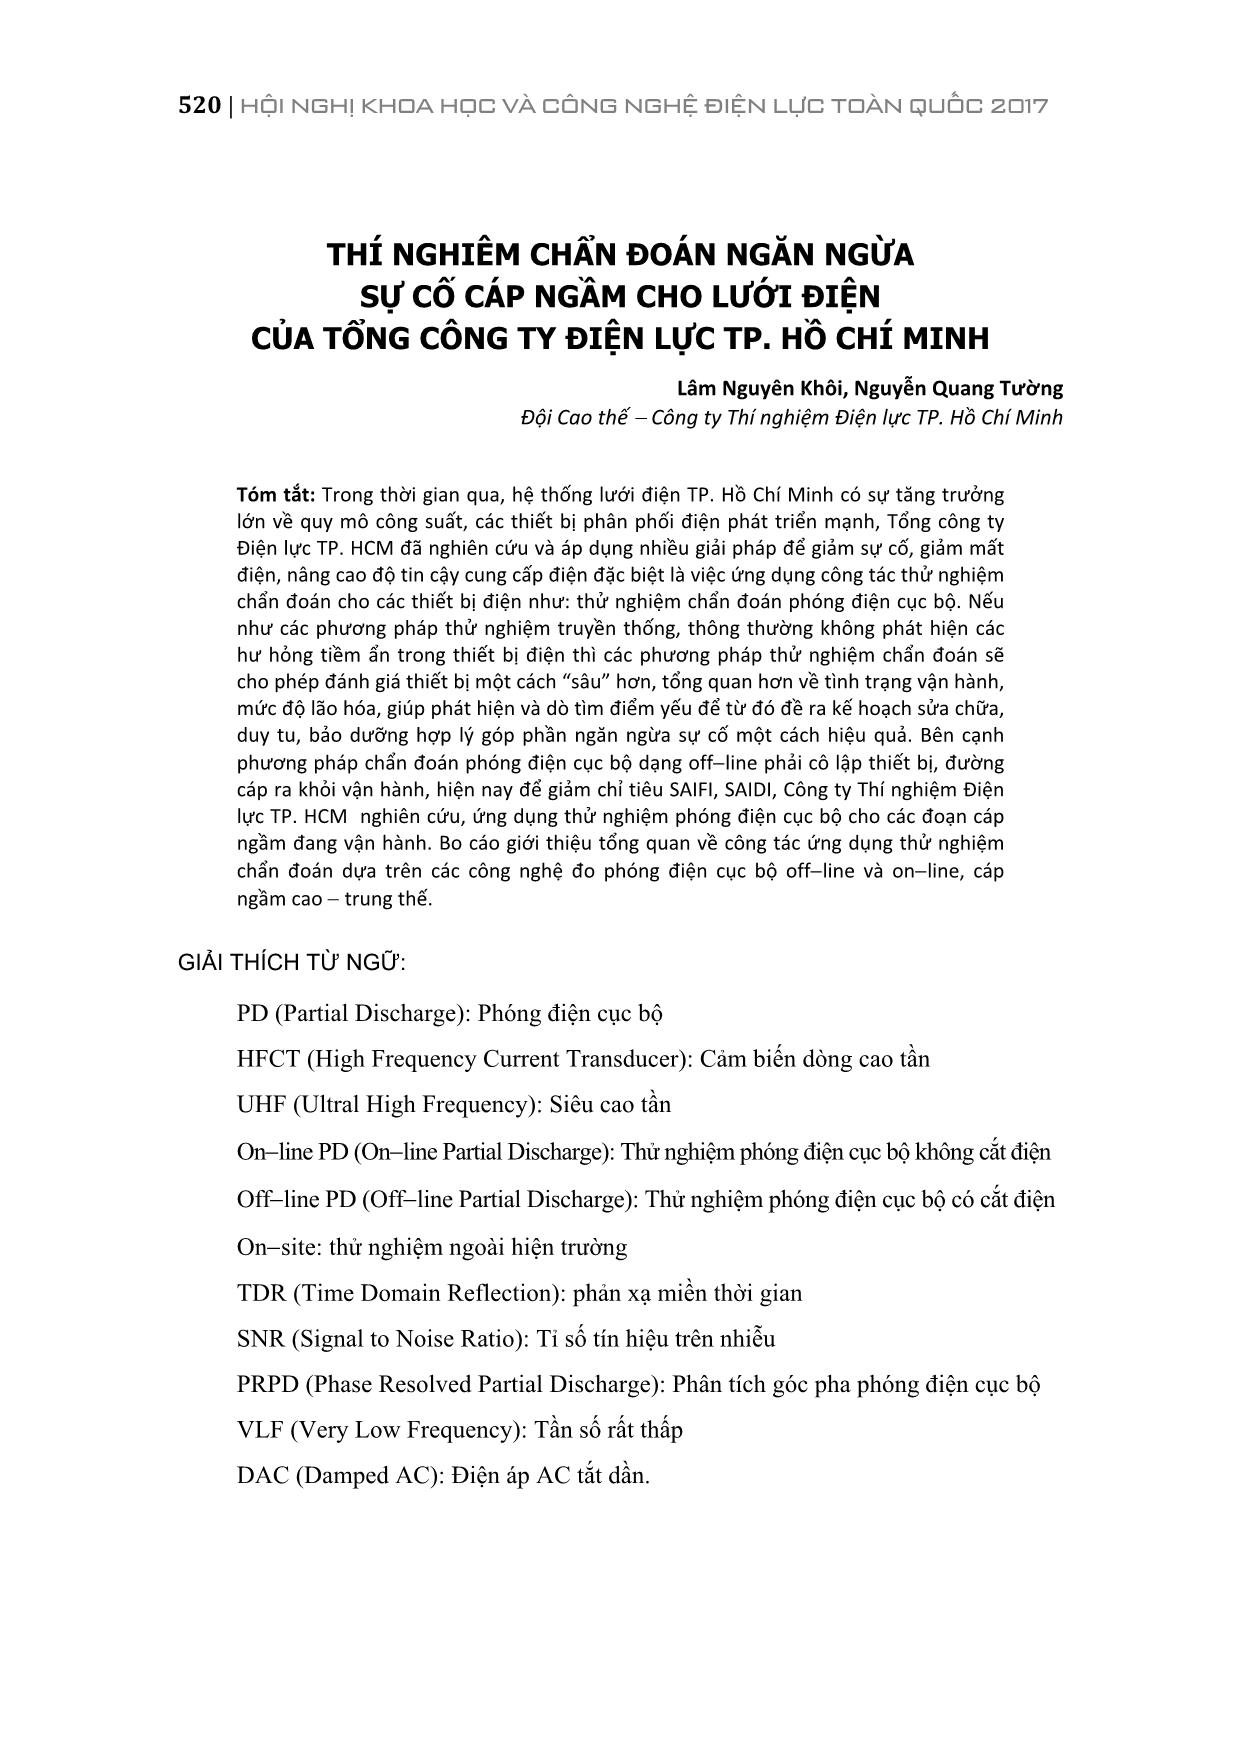 Thí nghiêm chẩn đoán ngăn ngừa sự cố cáp ngầm cho lưới điện của tổng công ty điện lực thành phố Hồ Chí Minh trang 1